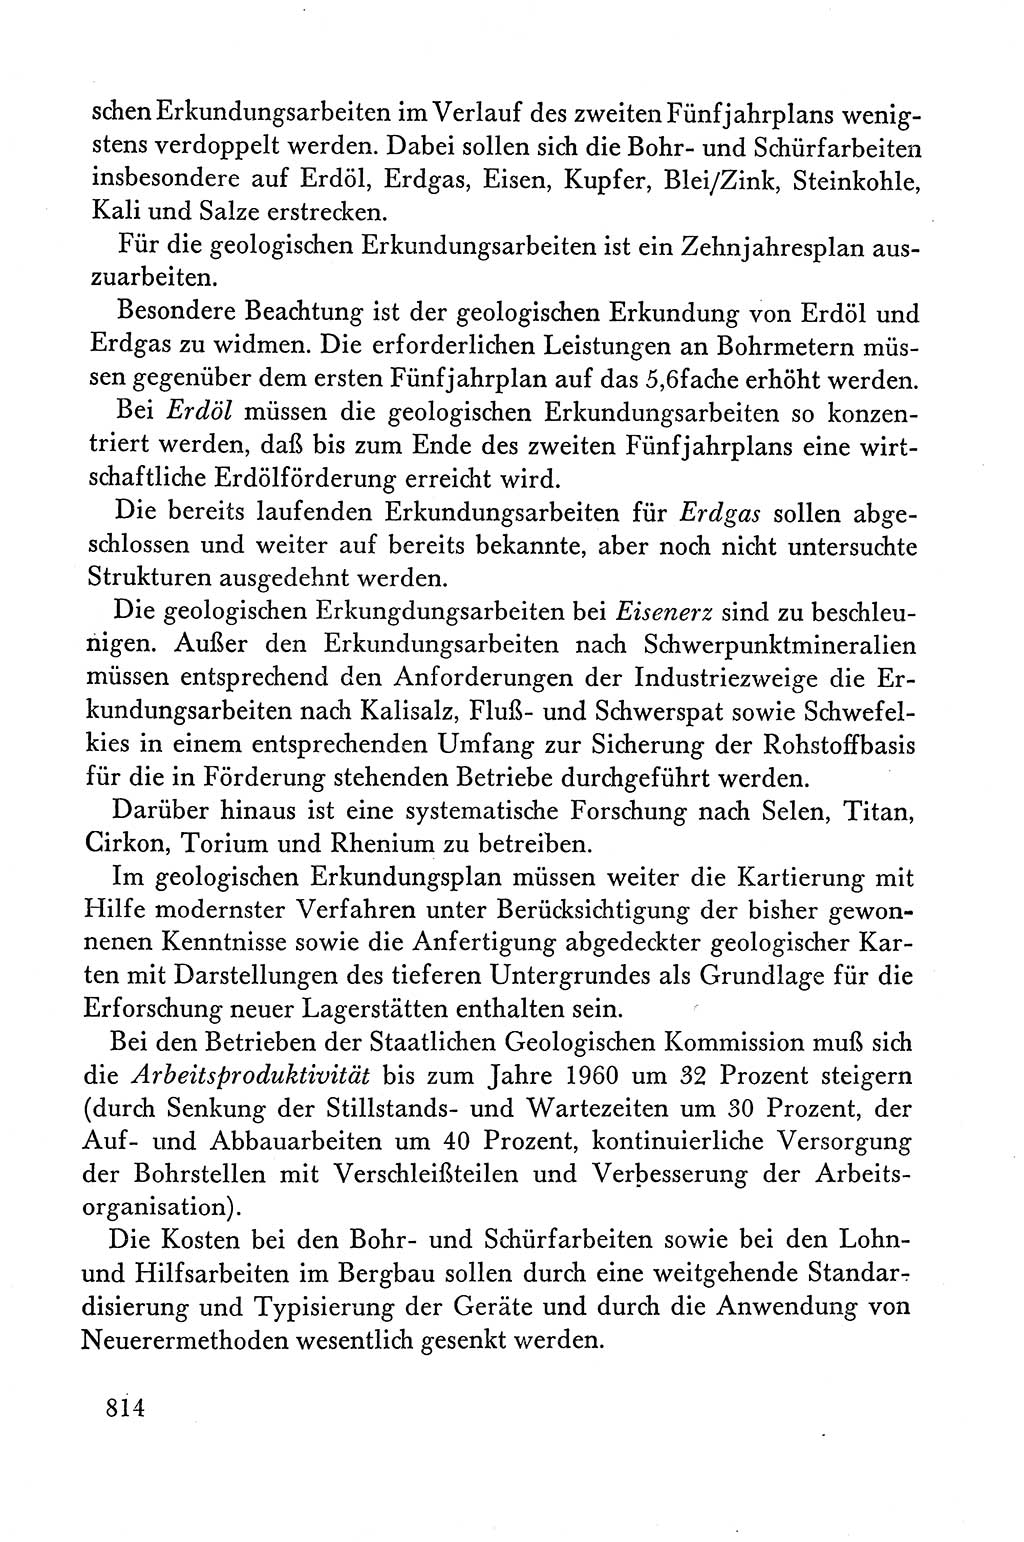 Dokumente der Sozialistischen Einheitspartei Deutschlands (SED) [Deutsche Demokratische Republik (DDR)] 1958-1959, Seite 814 (Dok. SED DDR 1958-1959, S. 814)